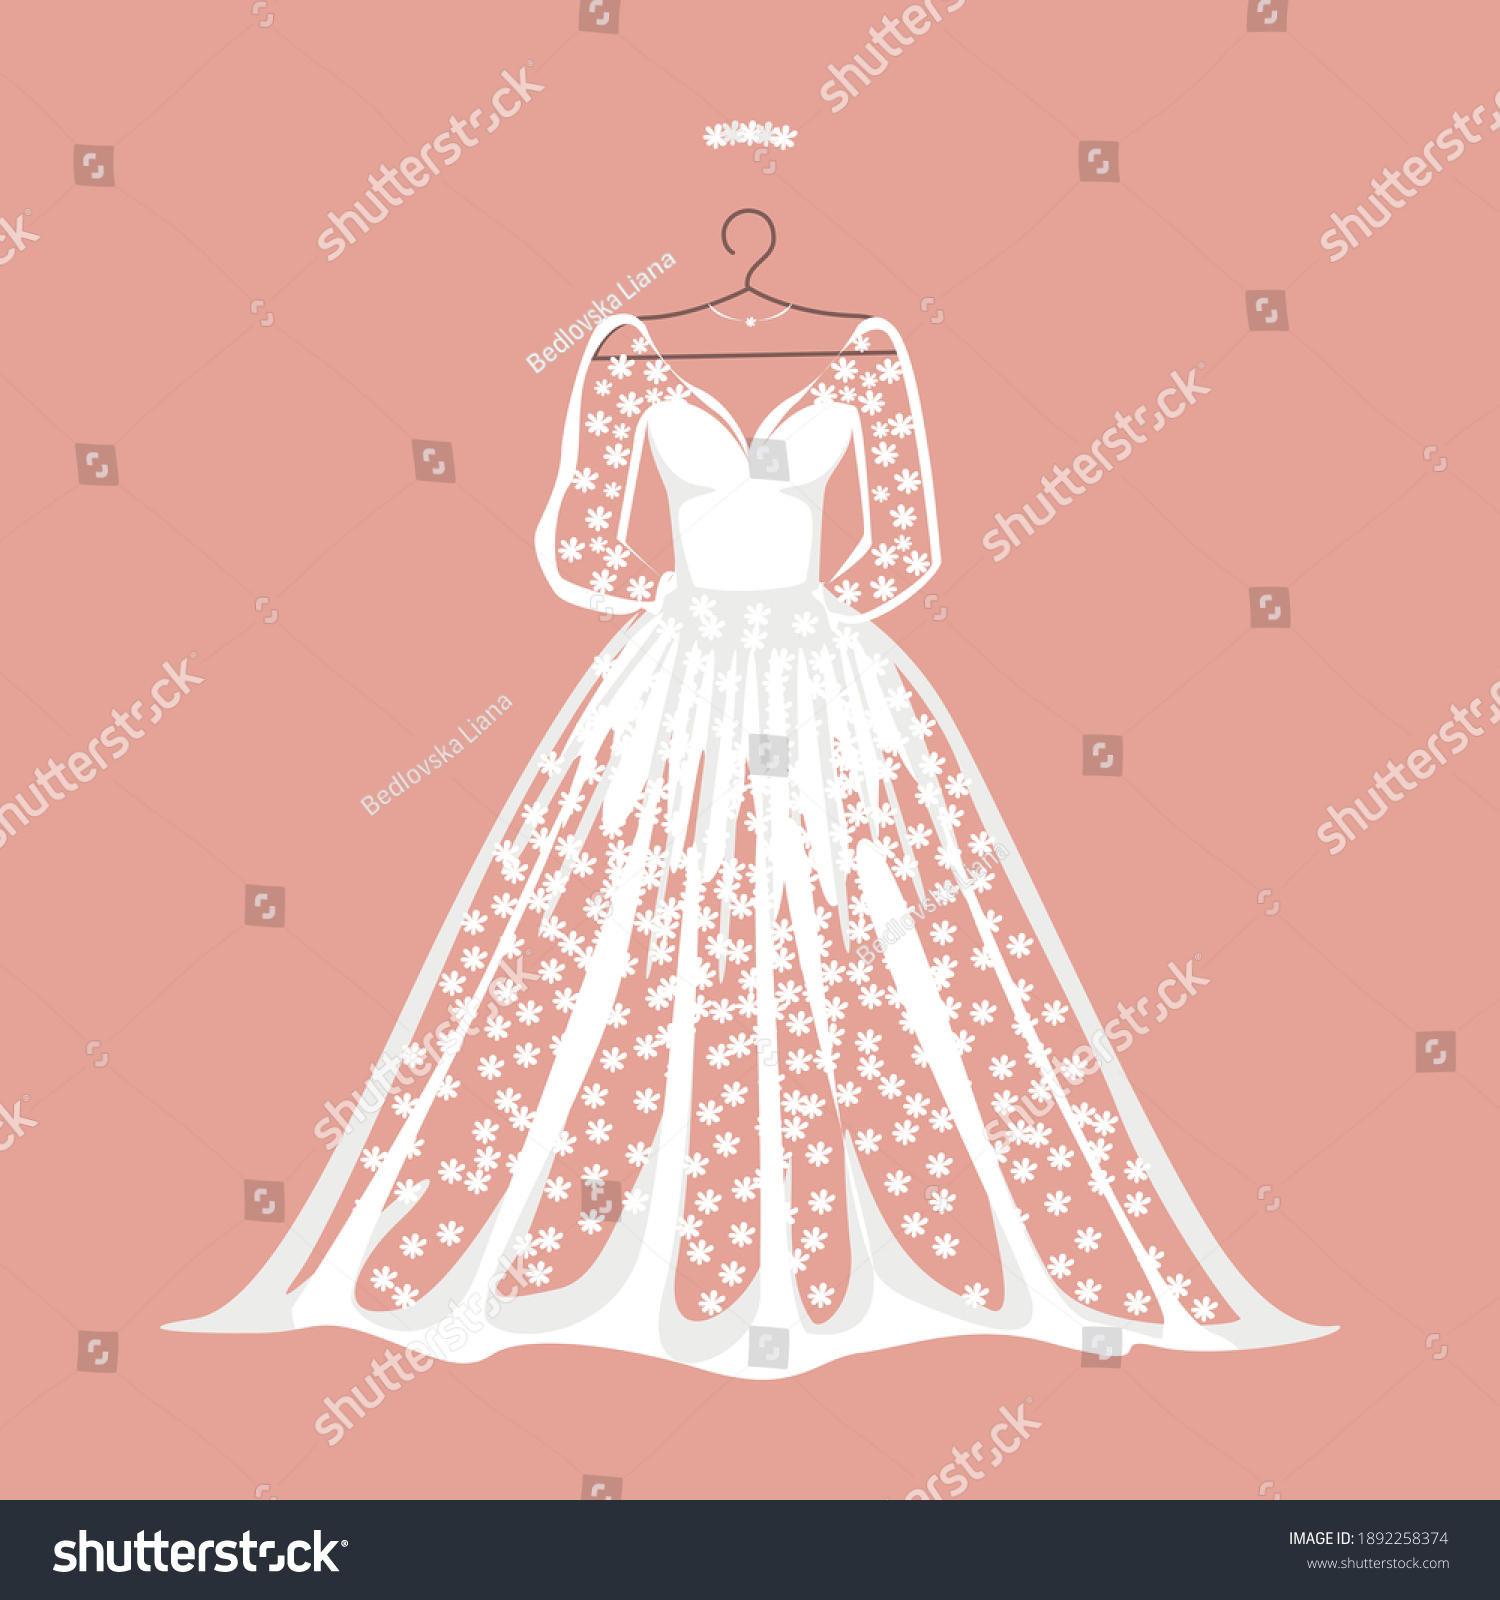 SVG of White lace wedding dress on a hanger. Background vector illustration. svg